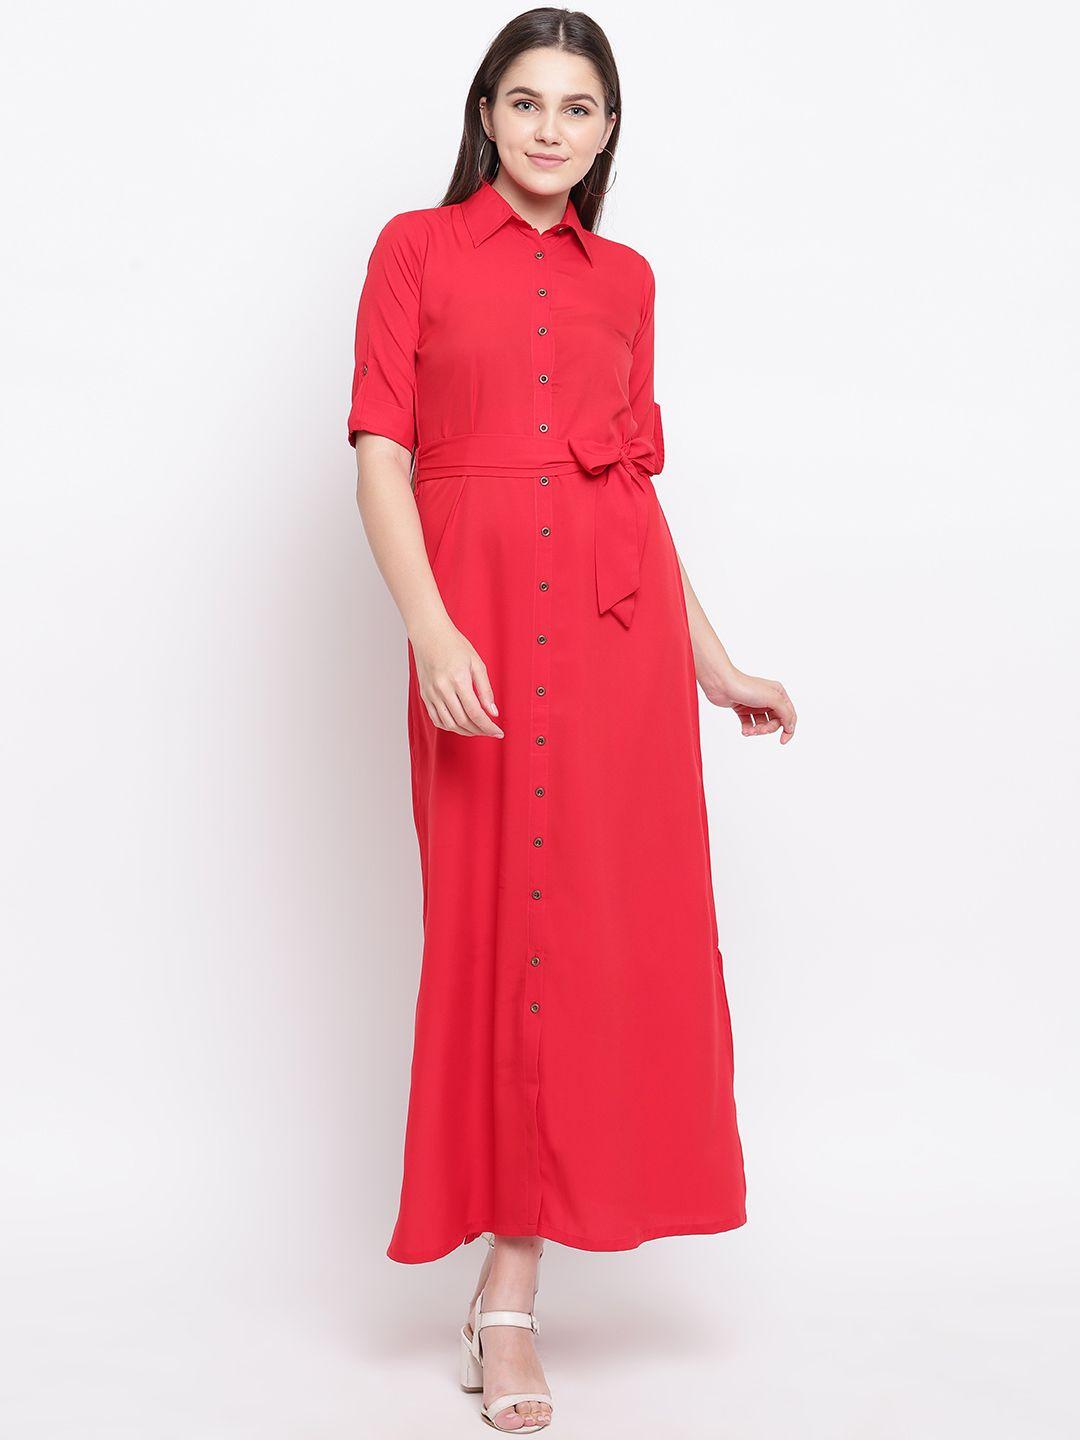 uptownie-lite-women-red-button-down-shirt-maxi-dress